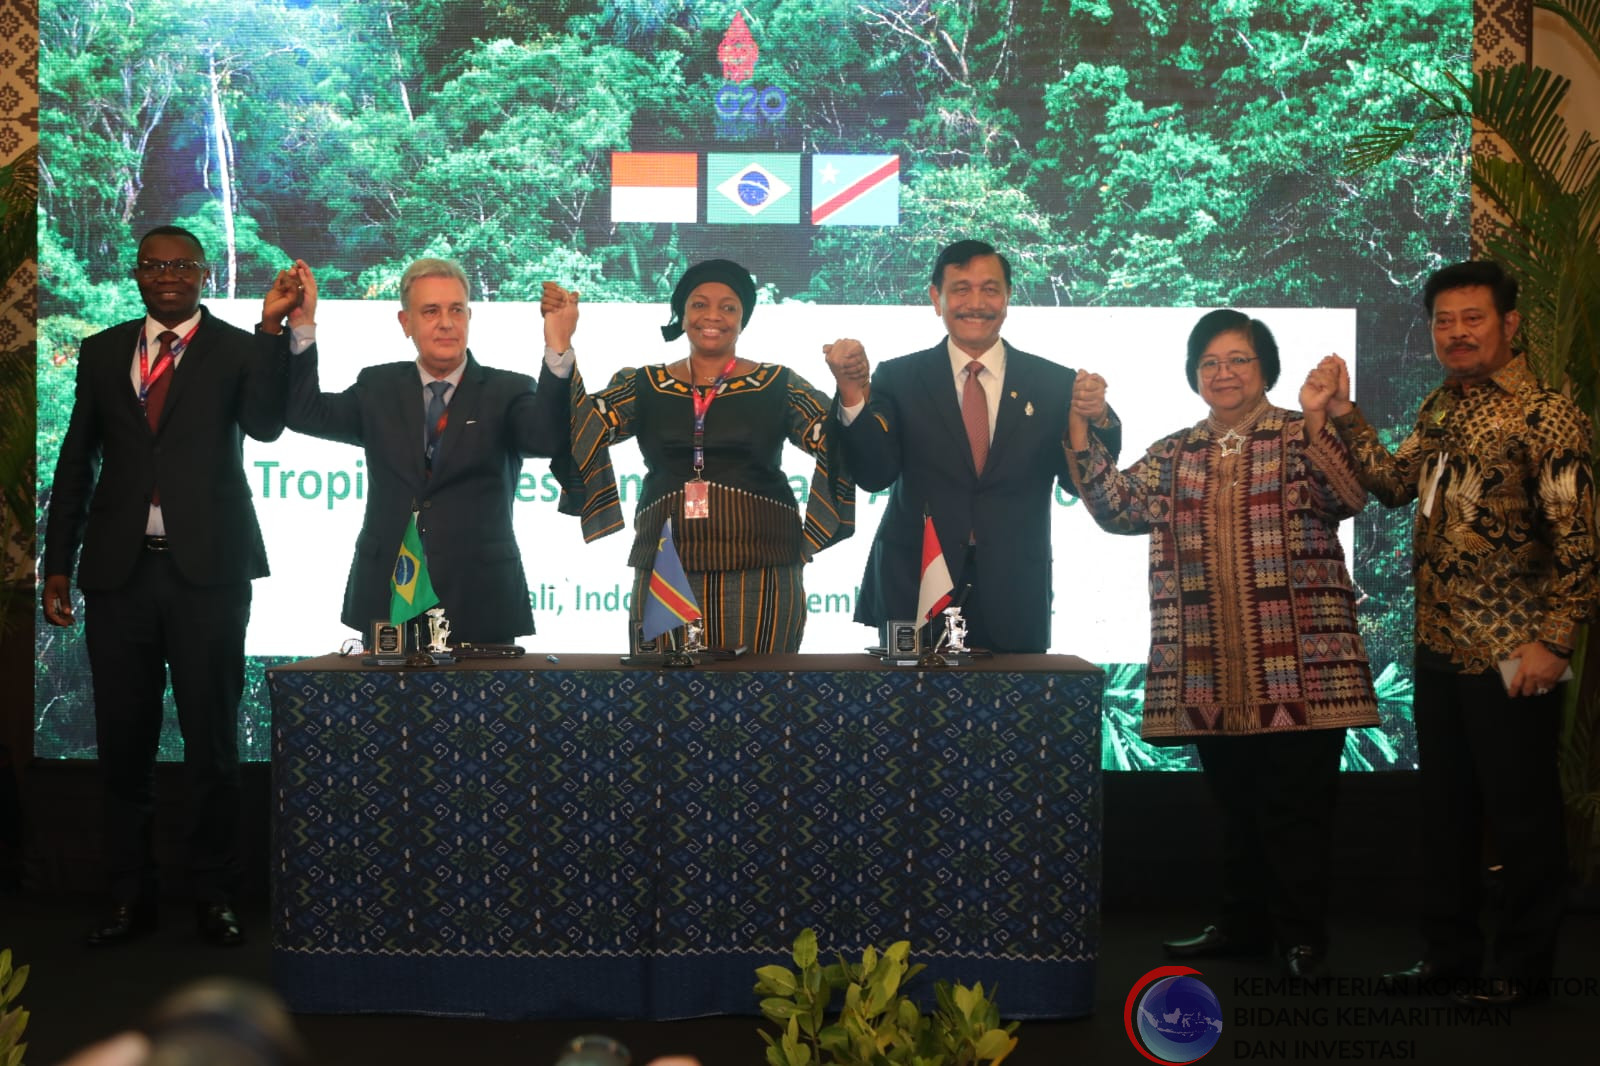 Presidensi G20 Indonesia, Perkuat Komitmen dan Tindakan Nyata Antarnegara di Bidang Lingkungan dan Perubahan Iklim